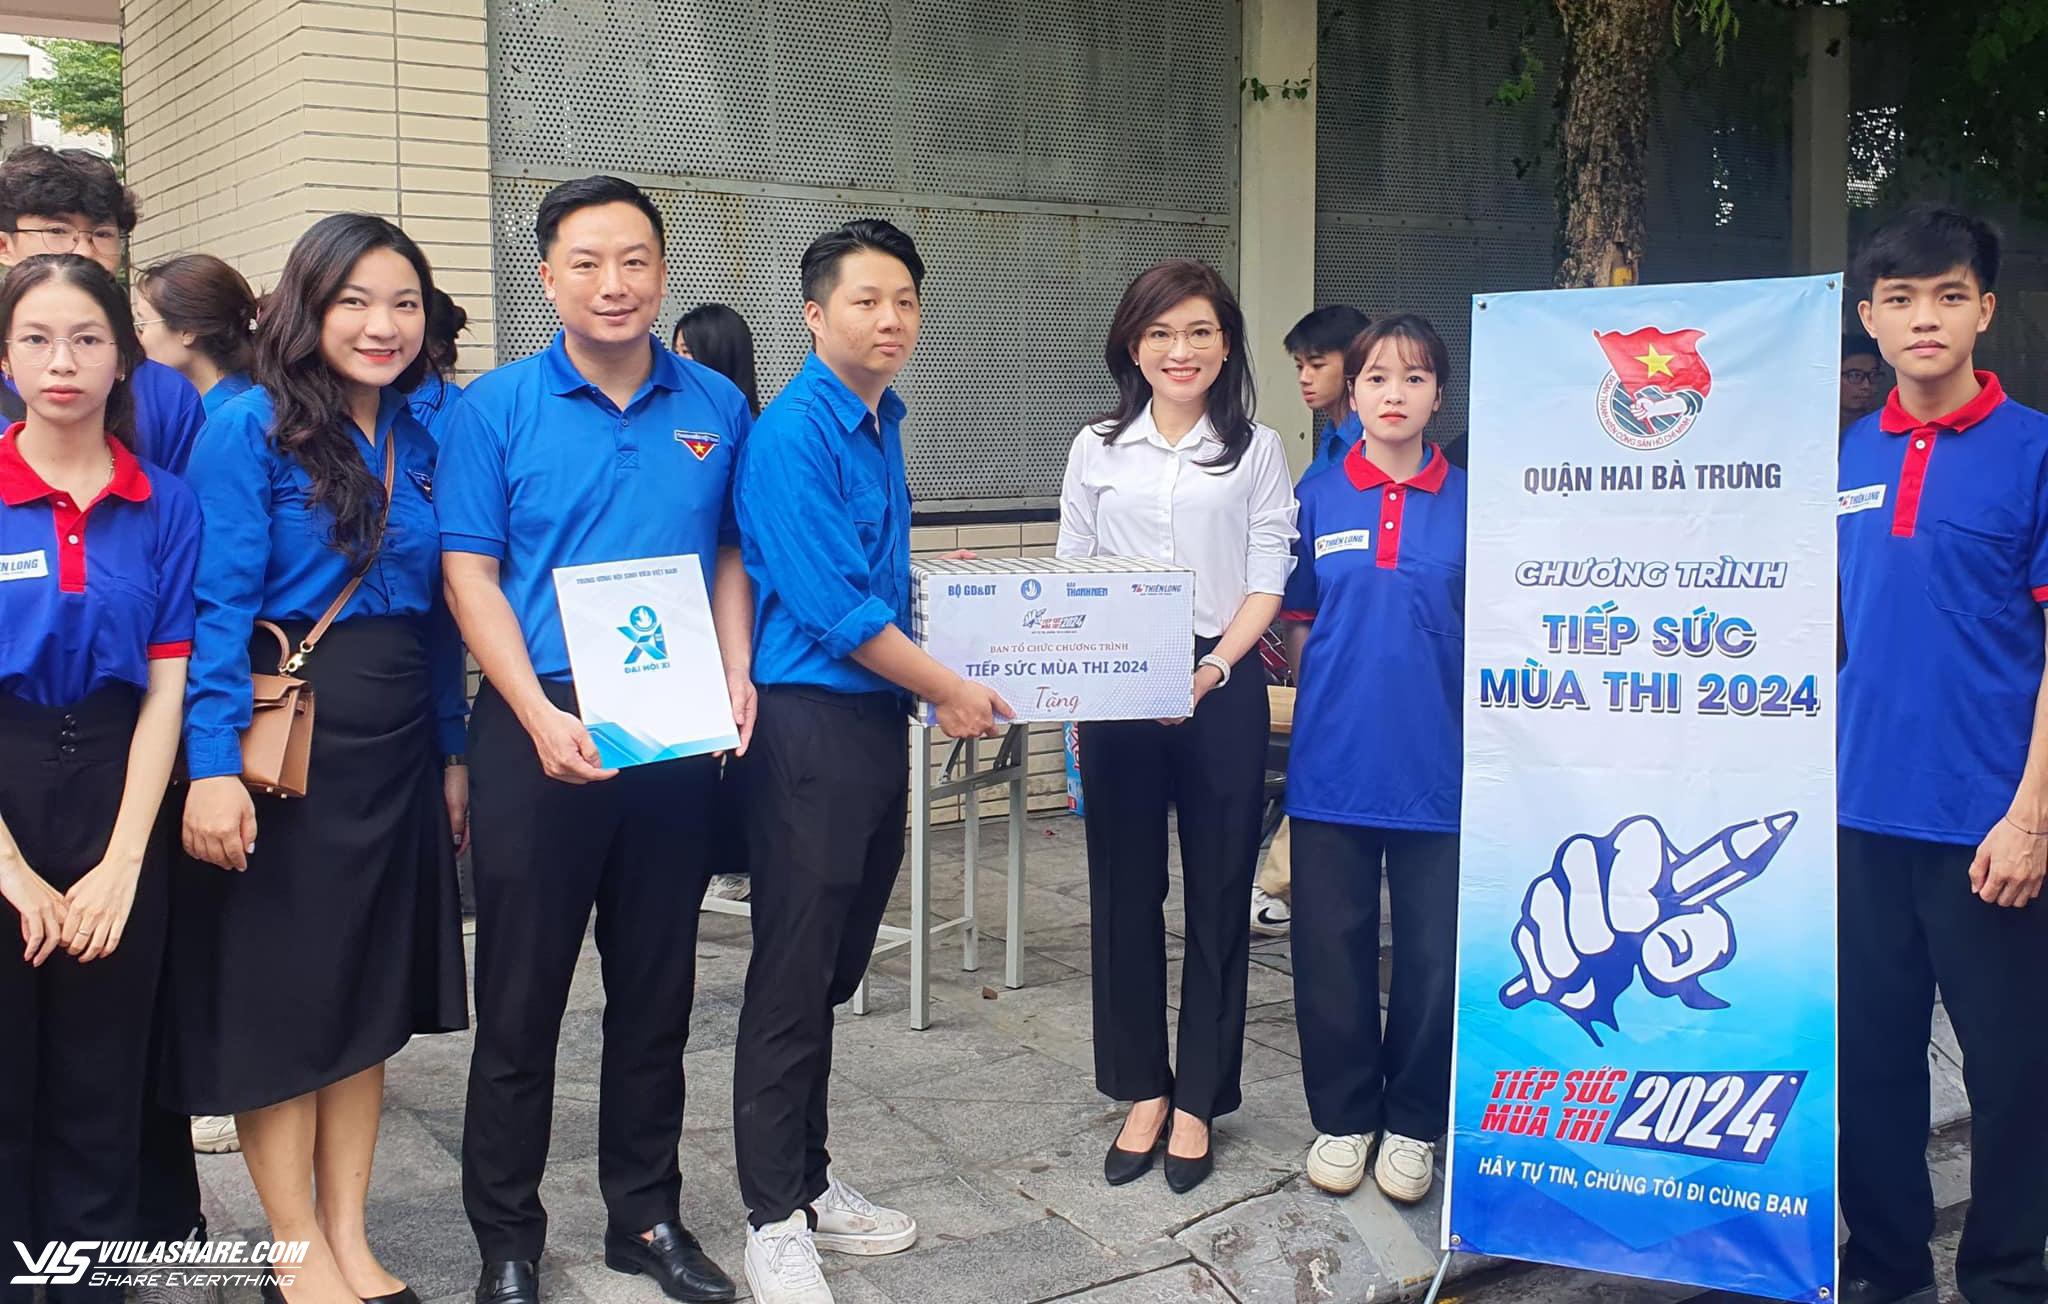 T.Ư Hội Sinh viên Việt Nam tặng quà tình nguyện viên Tiếp sức mùa thi- Ảnh 1.